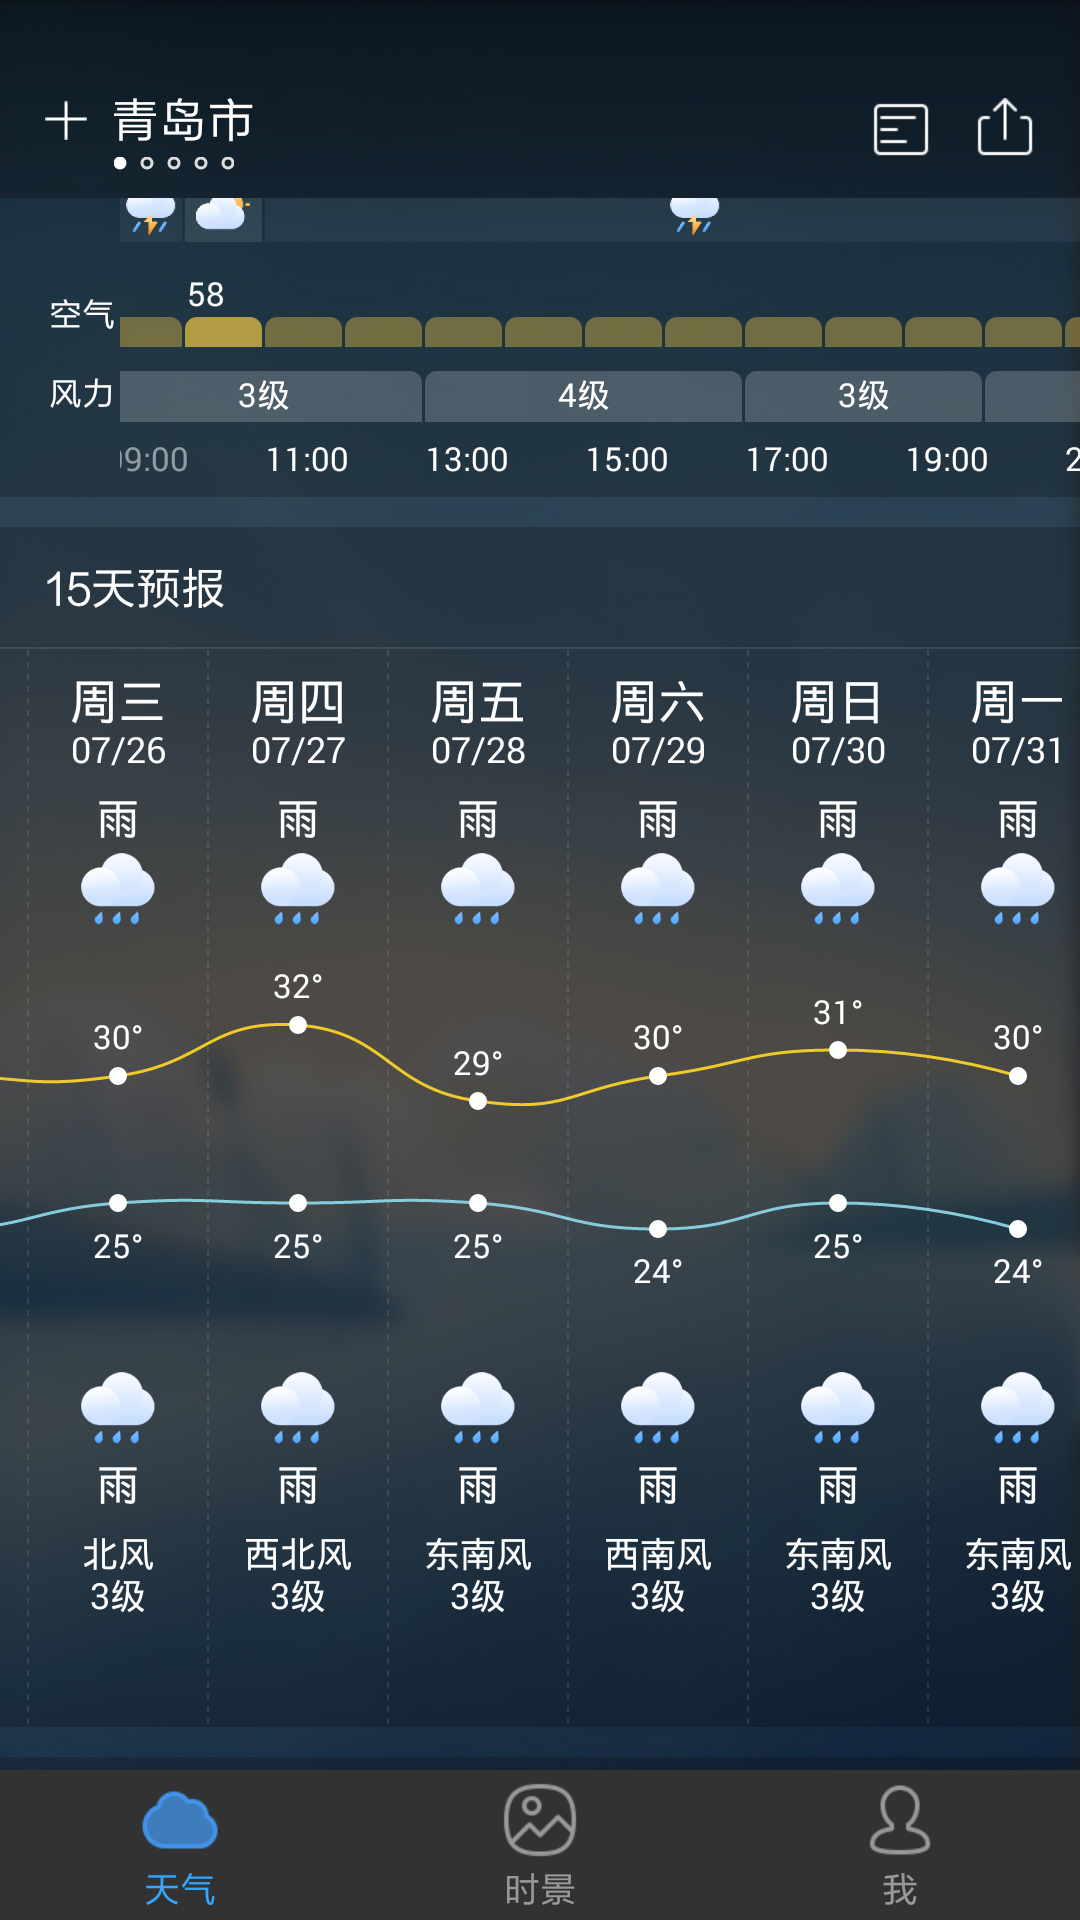 7月26至7月30号去青岛,天气预报有雨怎么办